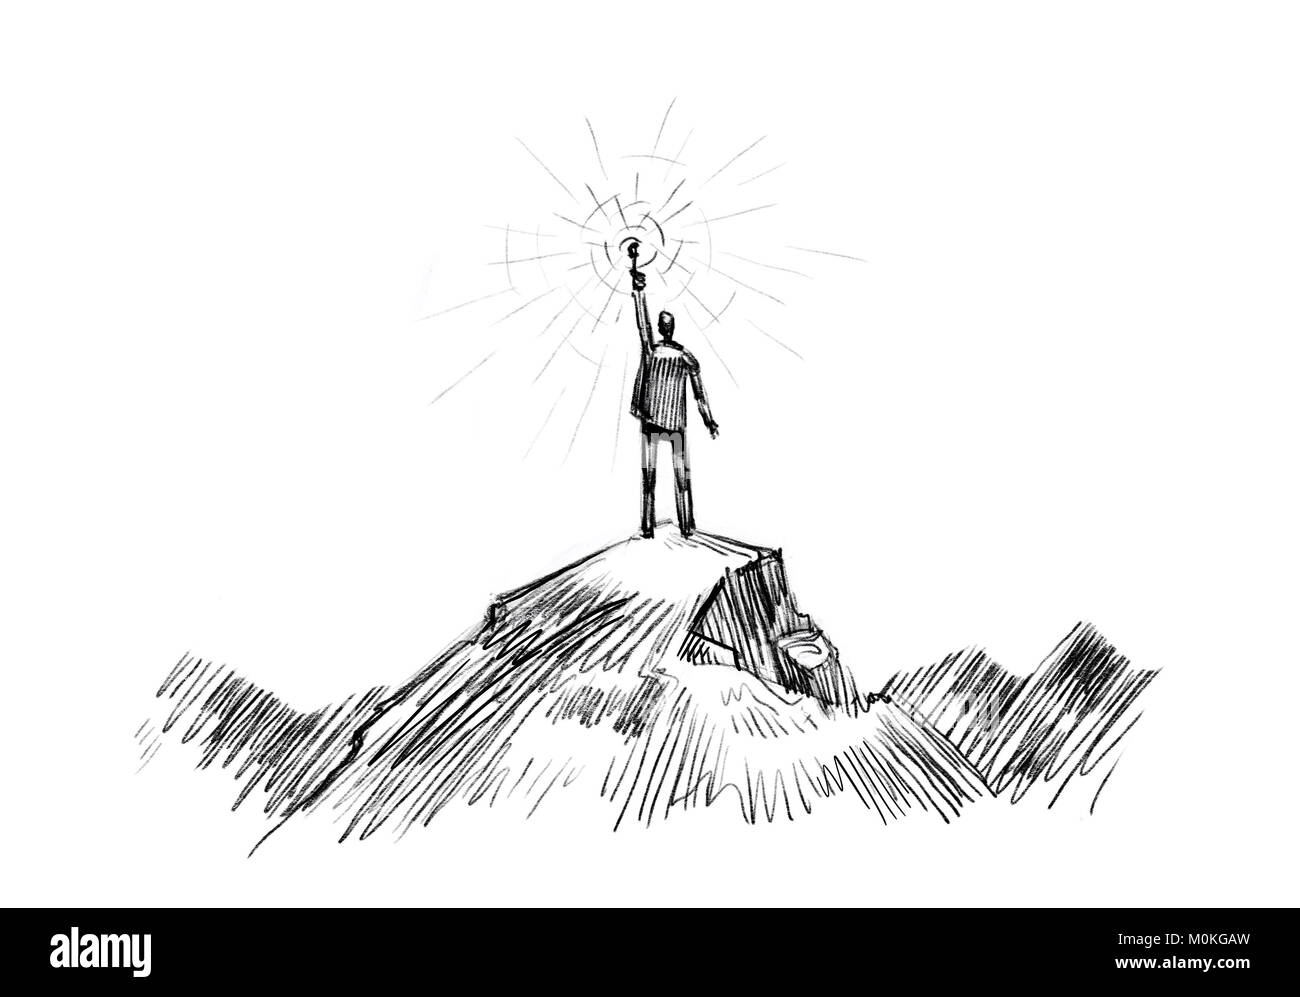 L'homme se dresse au sommet de la montagne avec une torche dans la main. Entreprise, succès, concept de réalisation Banque D'Images